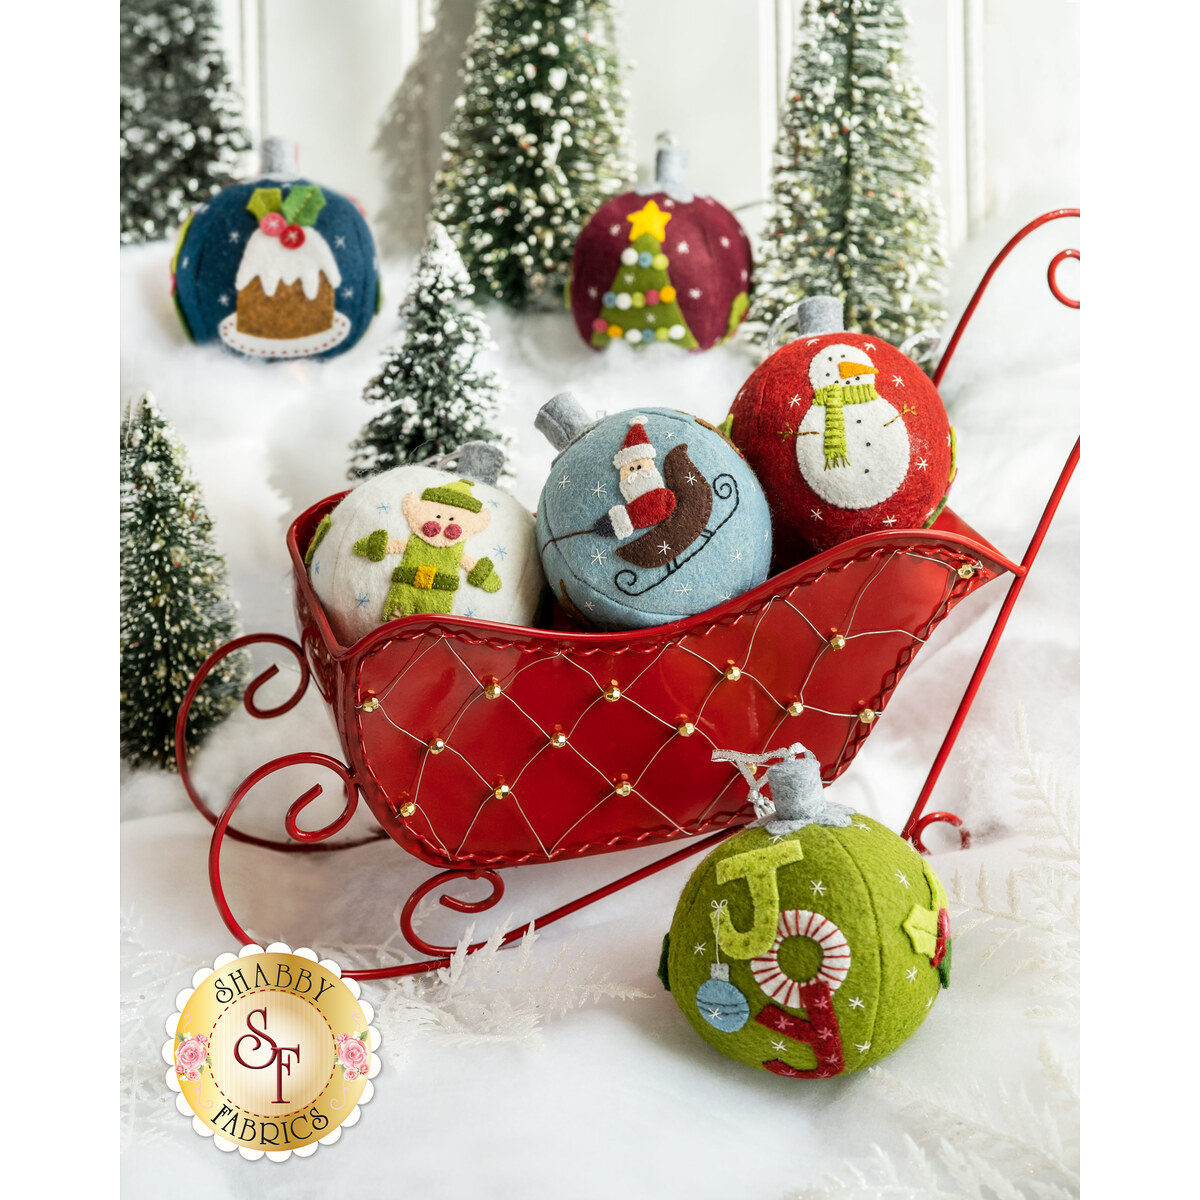 Christmas Ornament Coloring Kit, Christmas DIY Ornaments, Wooden Ornaments  to Paint, Kids DIY Ornaments, Kids Christmas Ornaments, DIY Kit 